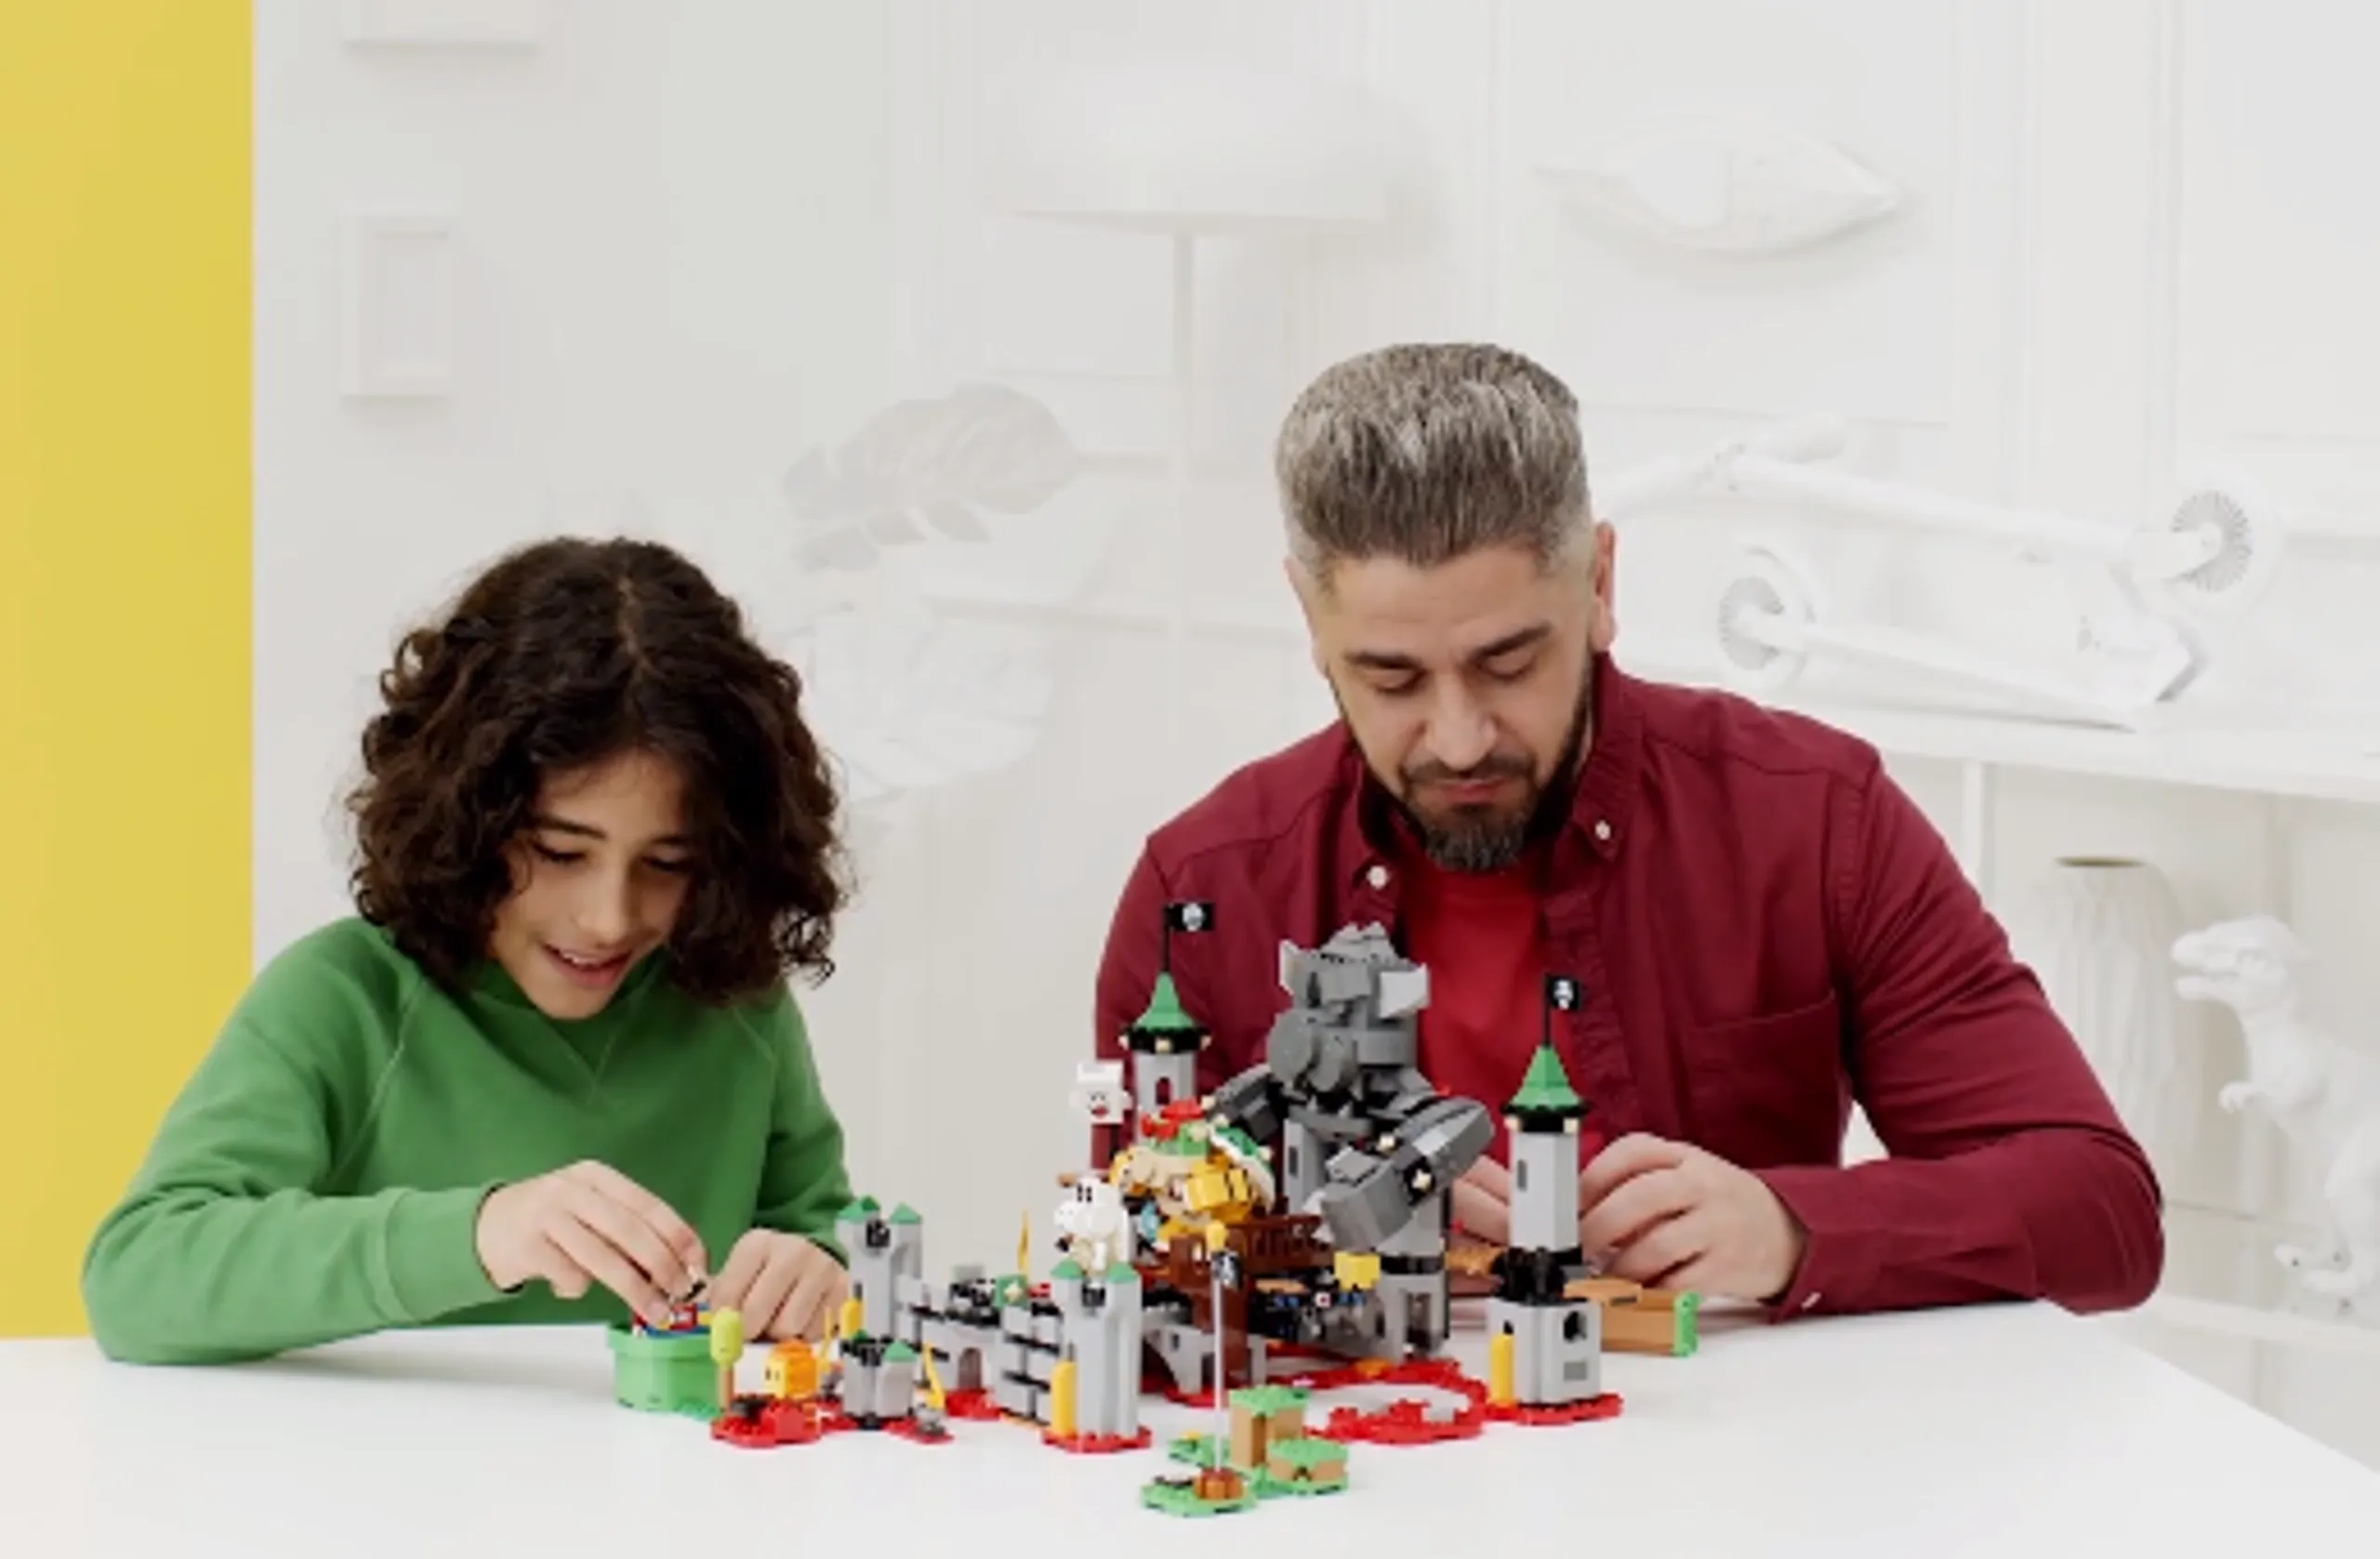 Bricks Bricks Bricks - Videos - LEGO.com for kids